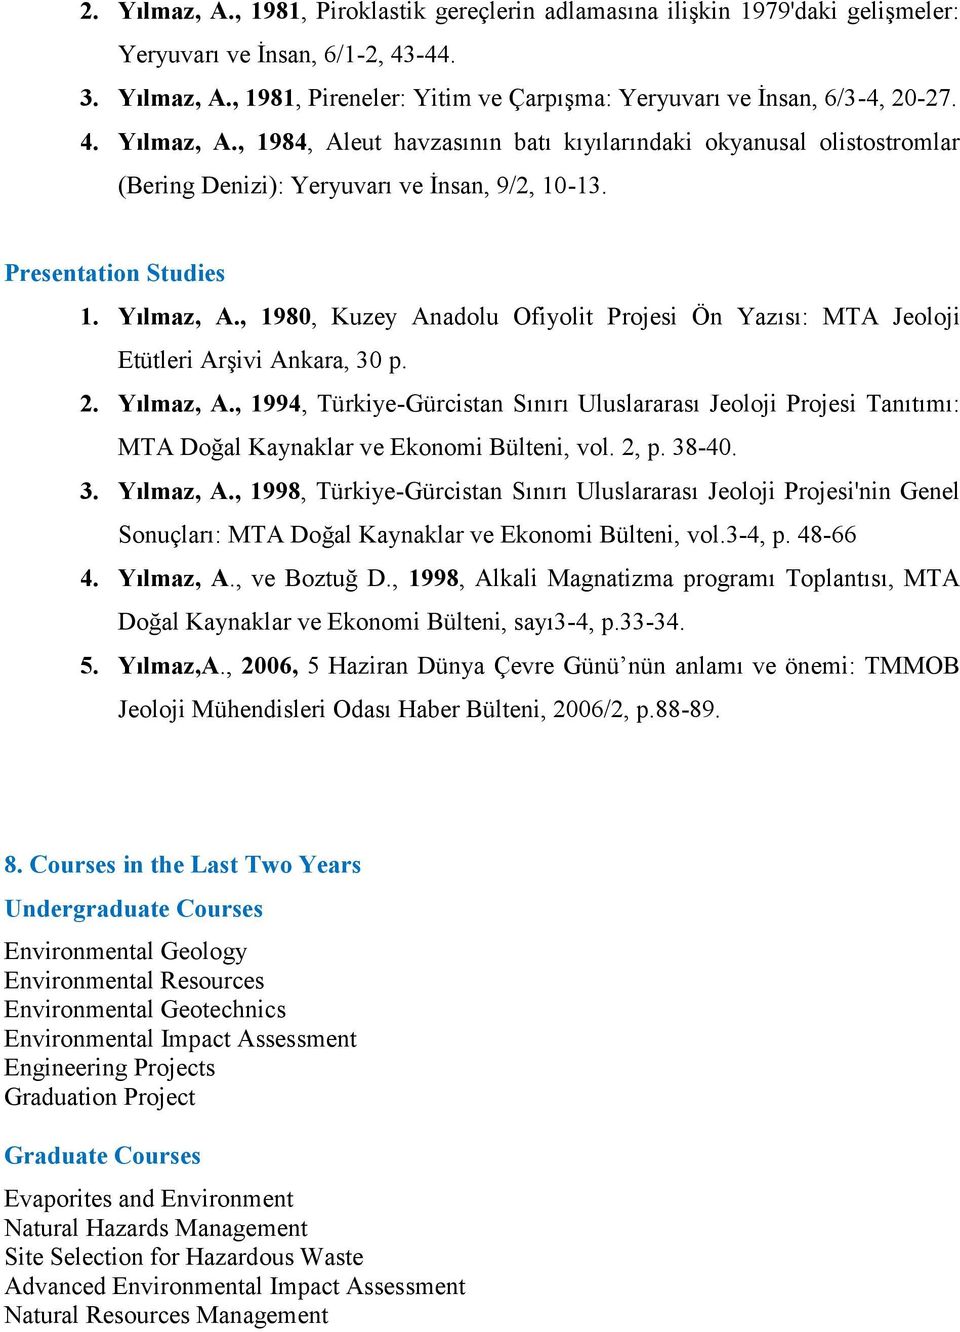 2. Yılmaz, A., 1994, Türkiye-Gürcistan Sınırı Uluslararası Jeoloji Projesi Tanıtımı: MTA Doğal Kaynaklar ve Ekonomi Bülteni, vol. 2, p. 38-40. 3. Yılmaz, A., 1998, Türkiye-Gürcistan Sınırı Uluslararası Jeoloji Projesi'nin Genel Sonuçları: MTA Doğal Kaynaklar ve Ekonomi Bülteni, vol.